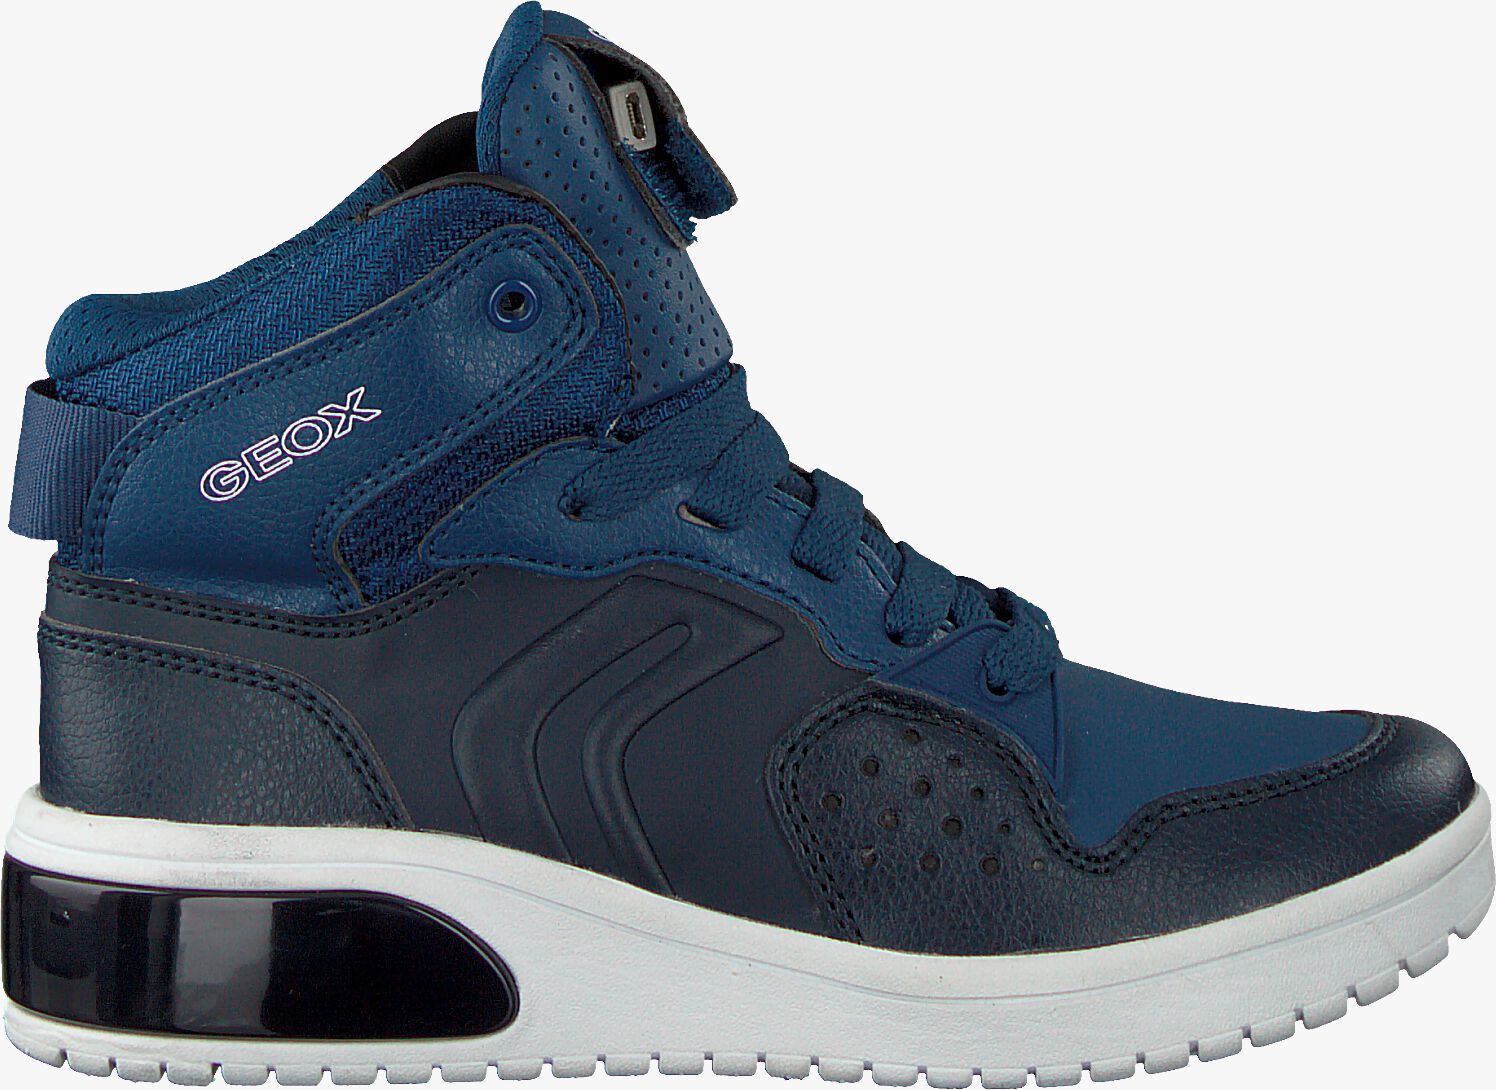 Blauwe Geox Sneakers J947Qa | Omoda